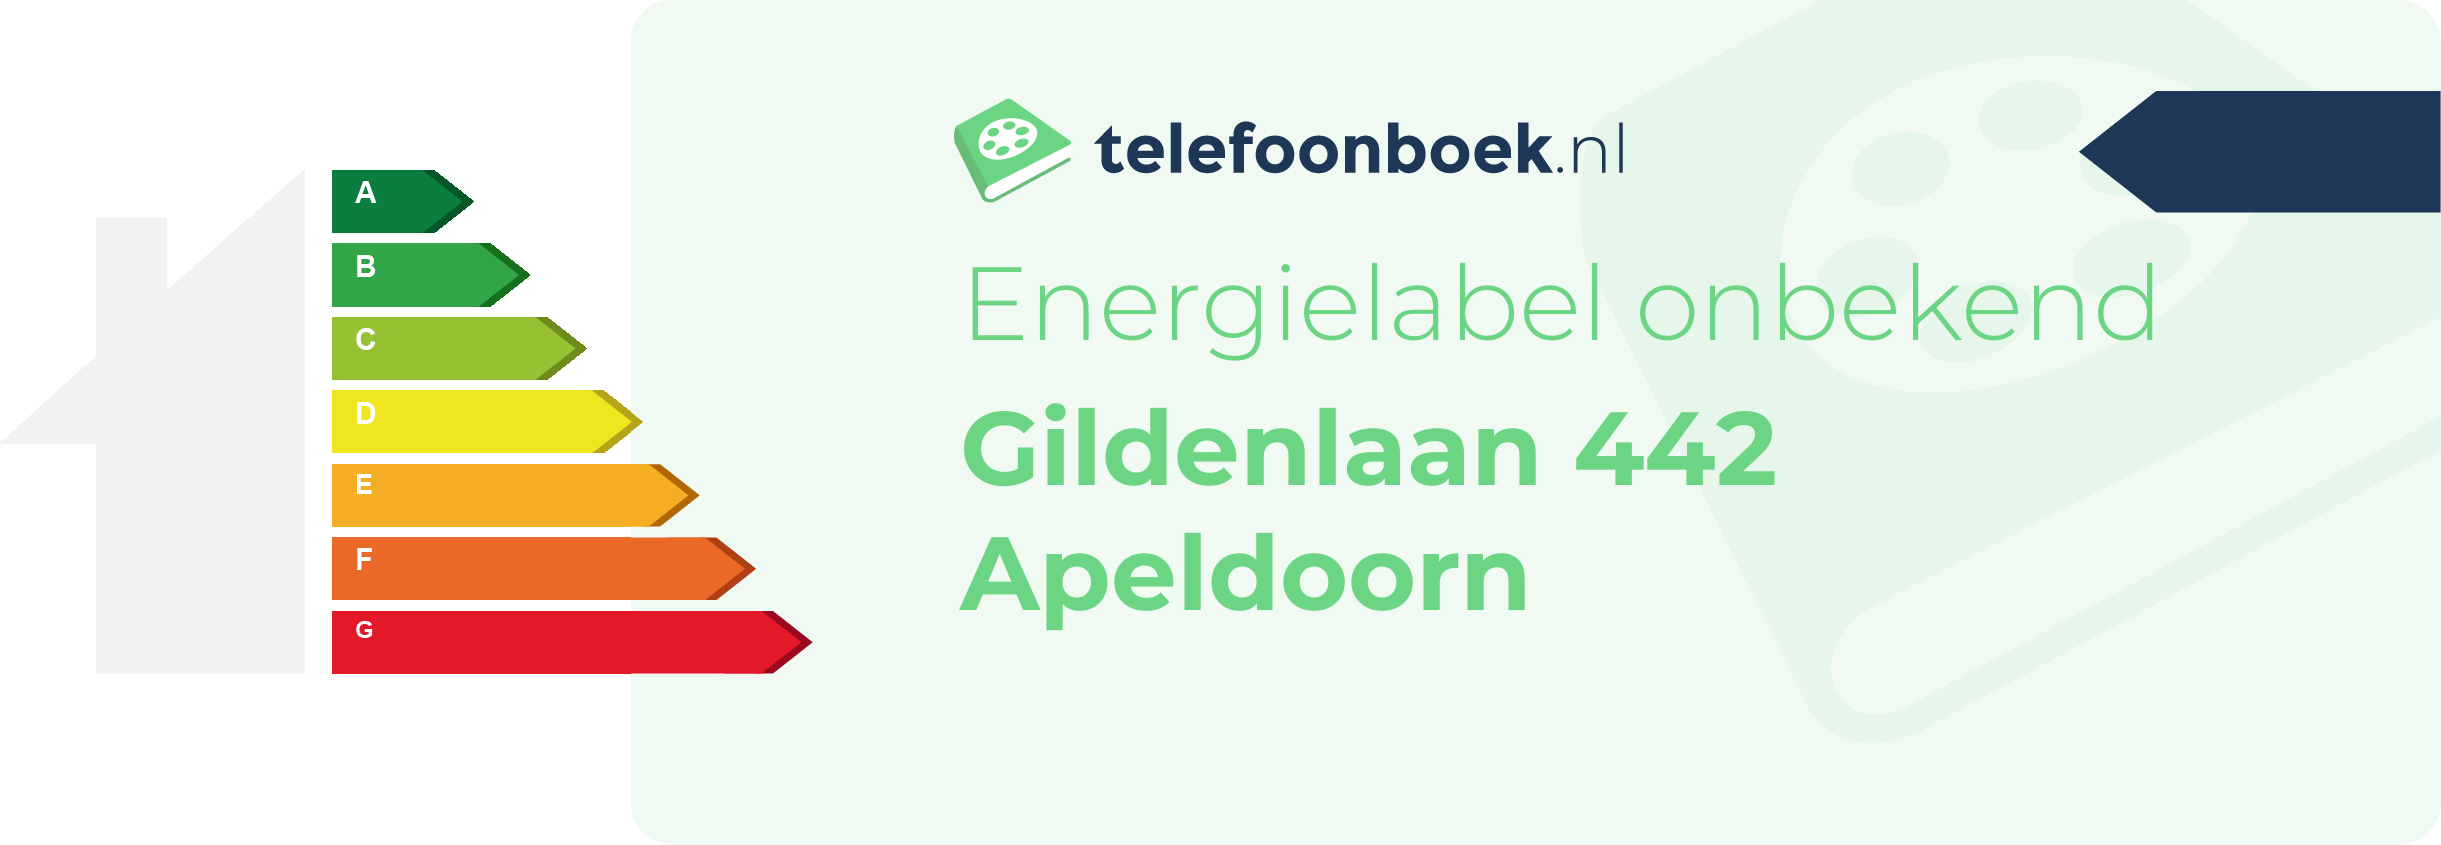 Energielabel Gildenlaan 442 Apeldoorn